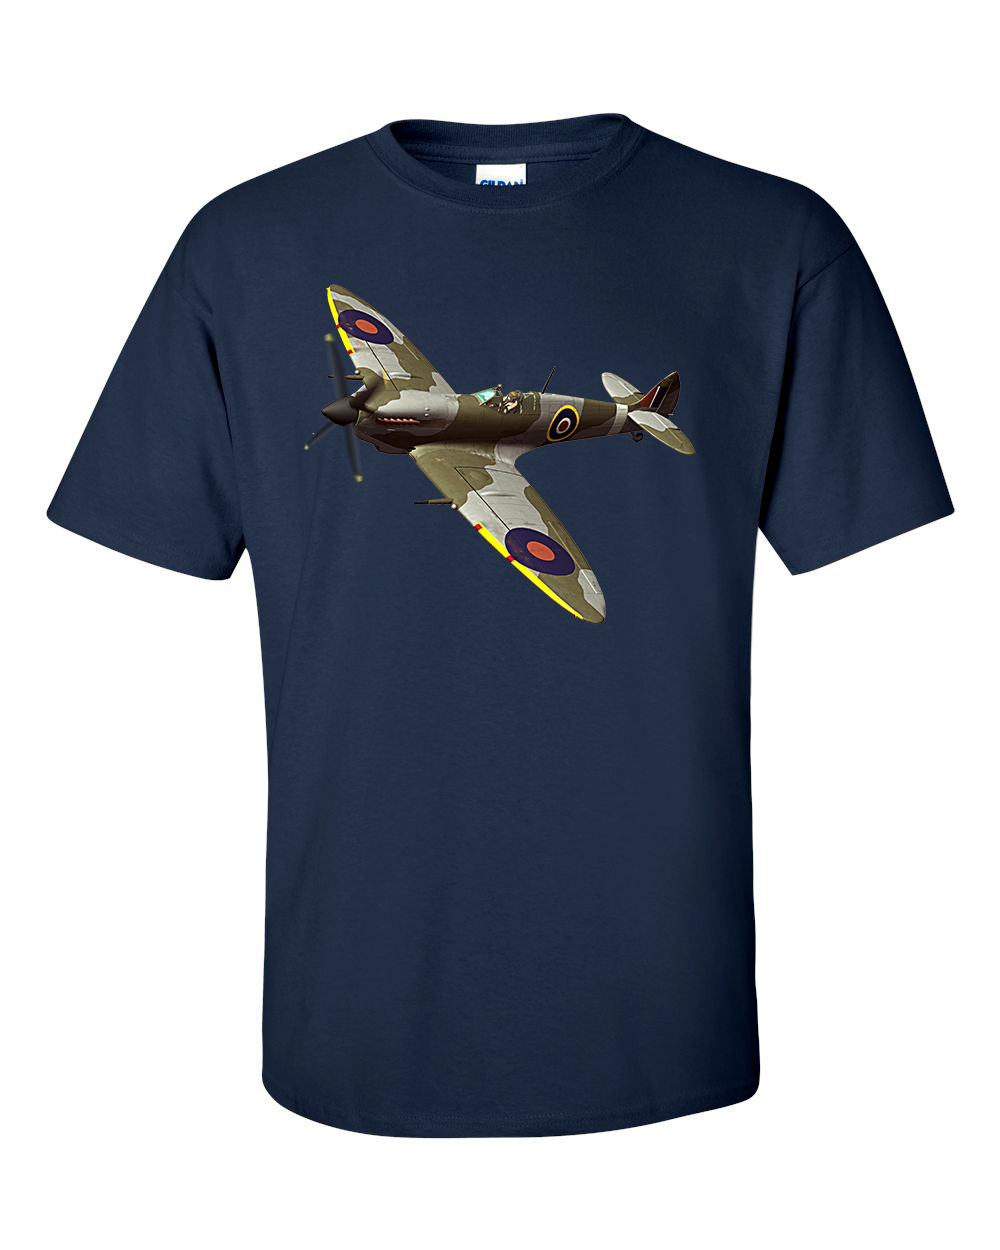 Spitfire Fighter Aircraft WW2 RAF T-Shirt